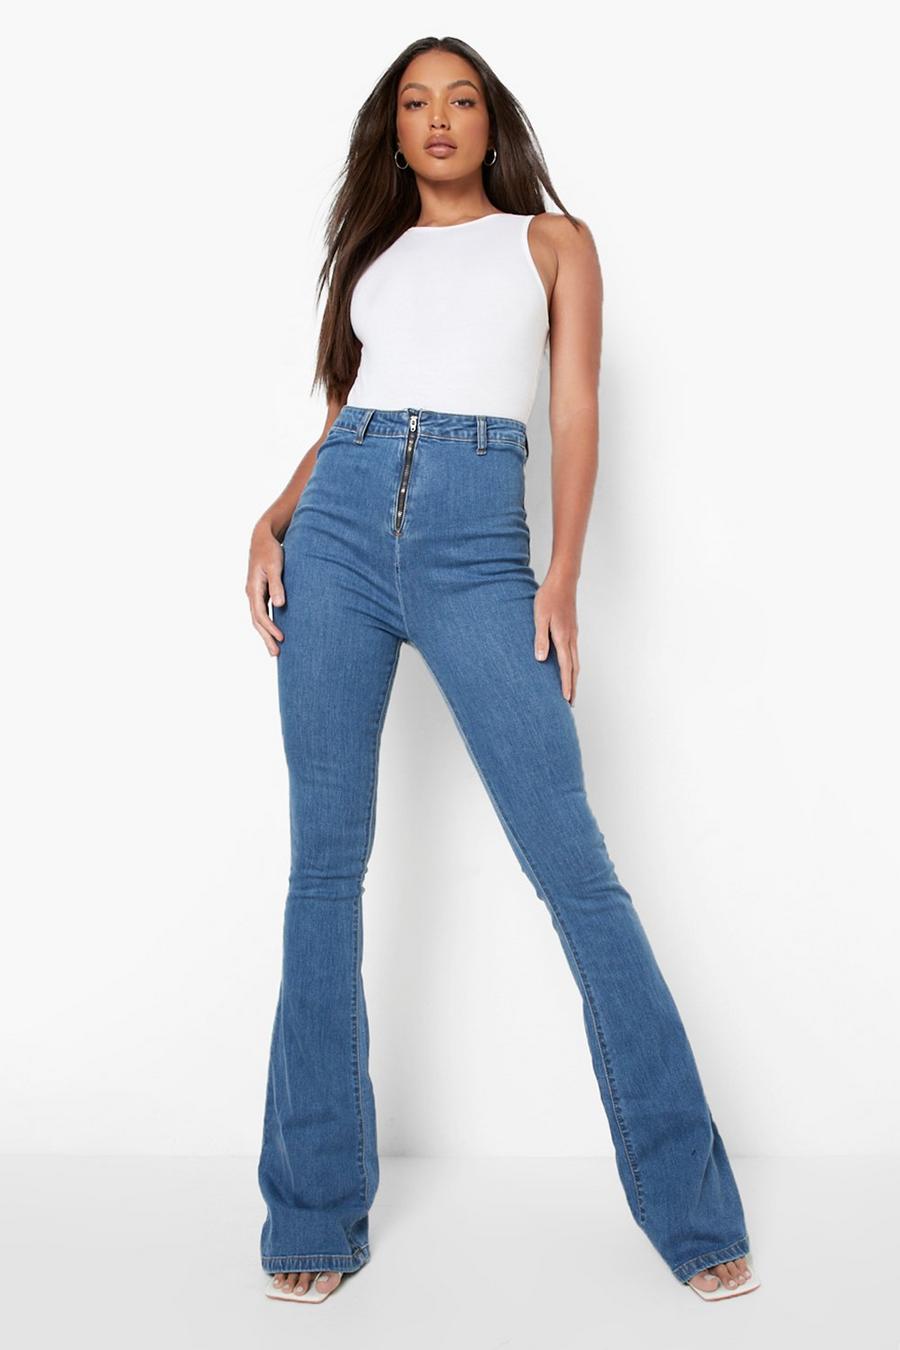 כחול ביניים ג'ינס סקיני נמתח מתרחב עם רוכסן בחזית לנשים גבוהות image number 1